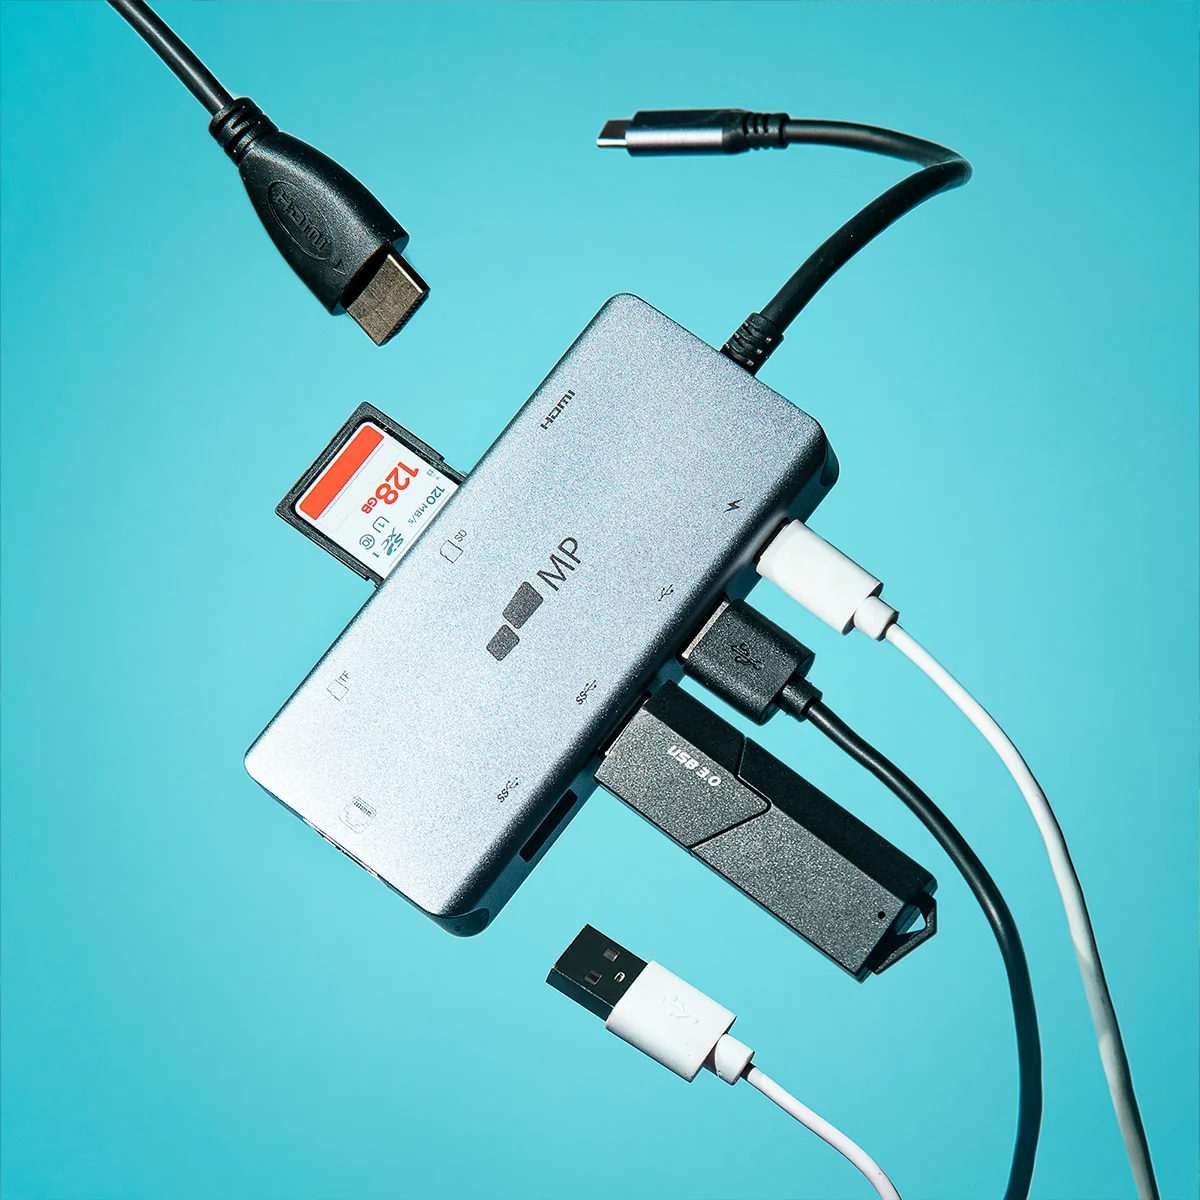 USB-C 8 in 1 Multiport Hub - Dual 4k HDMI, Ethernet